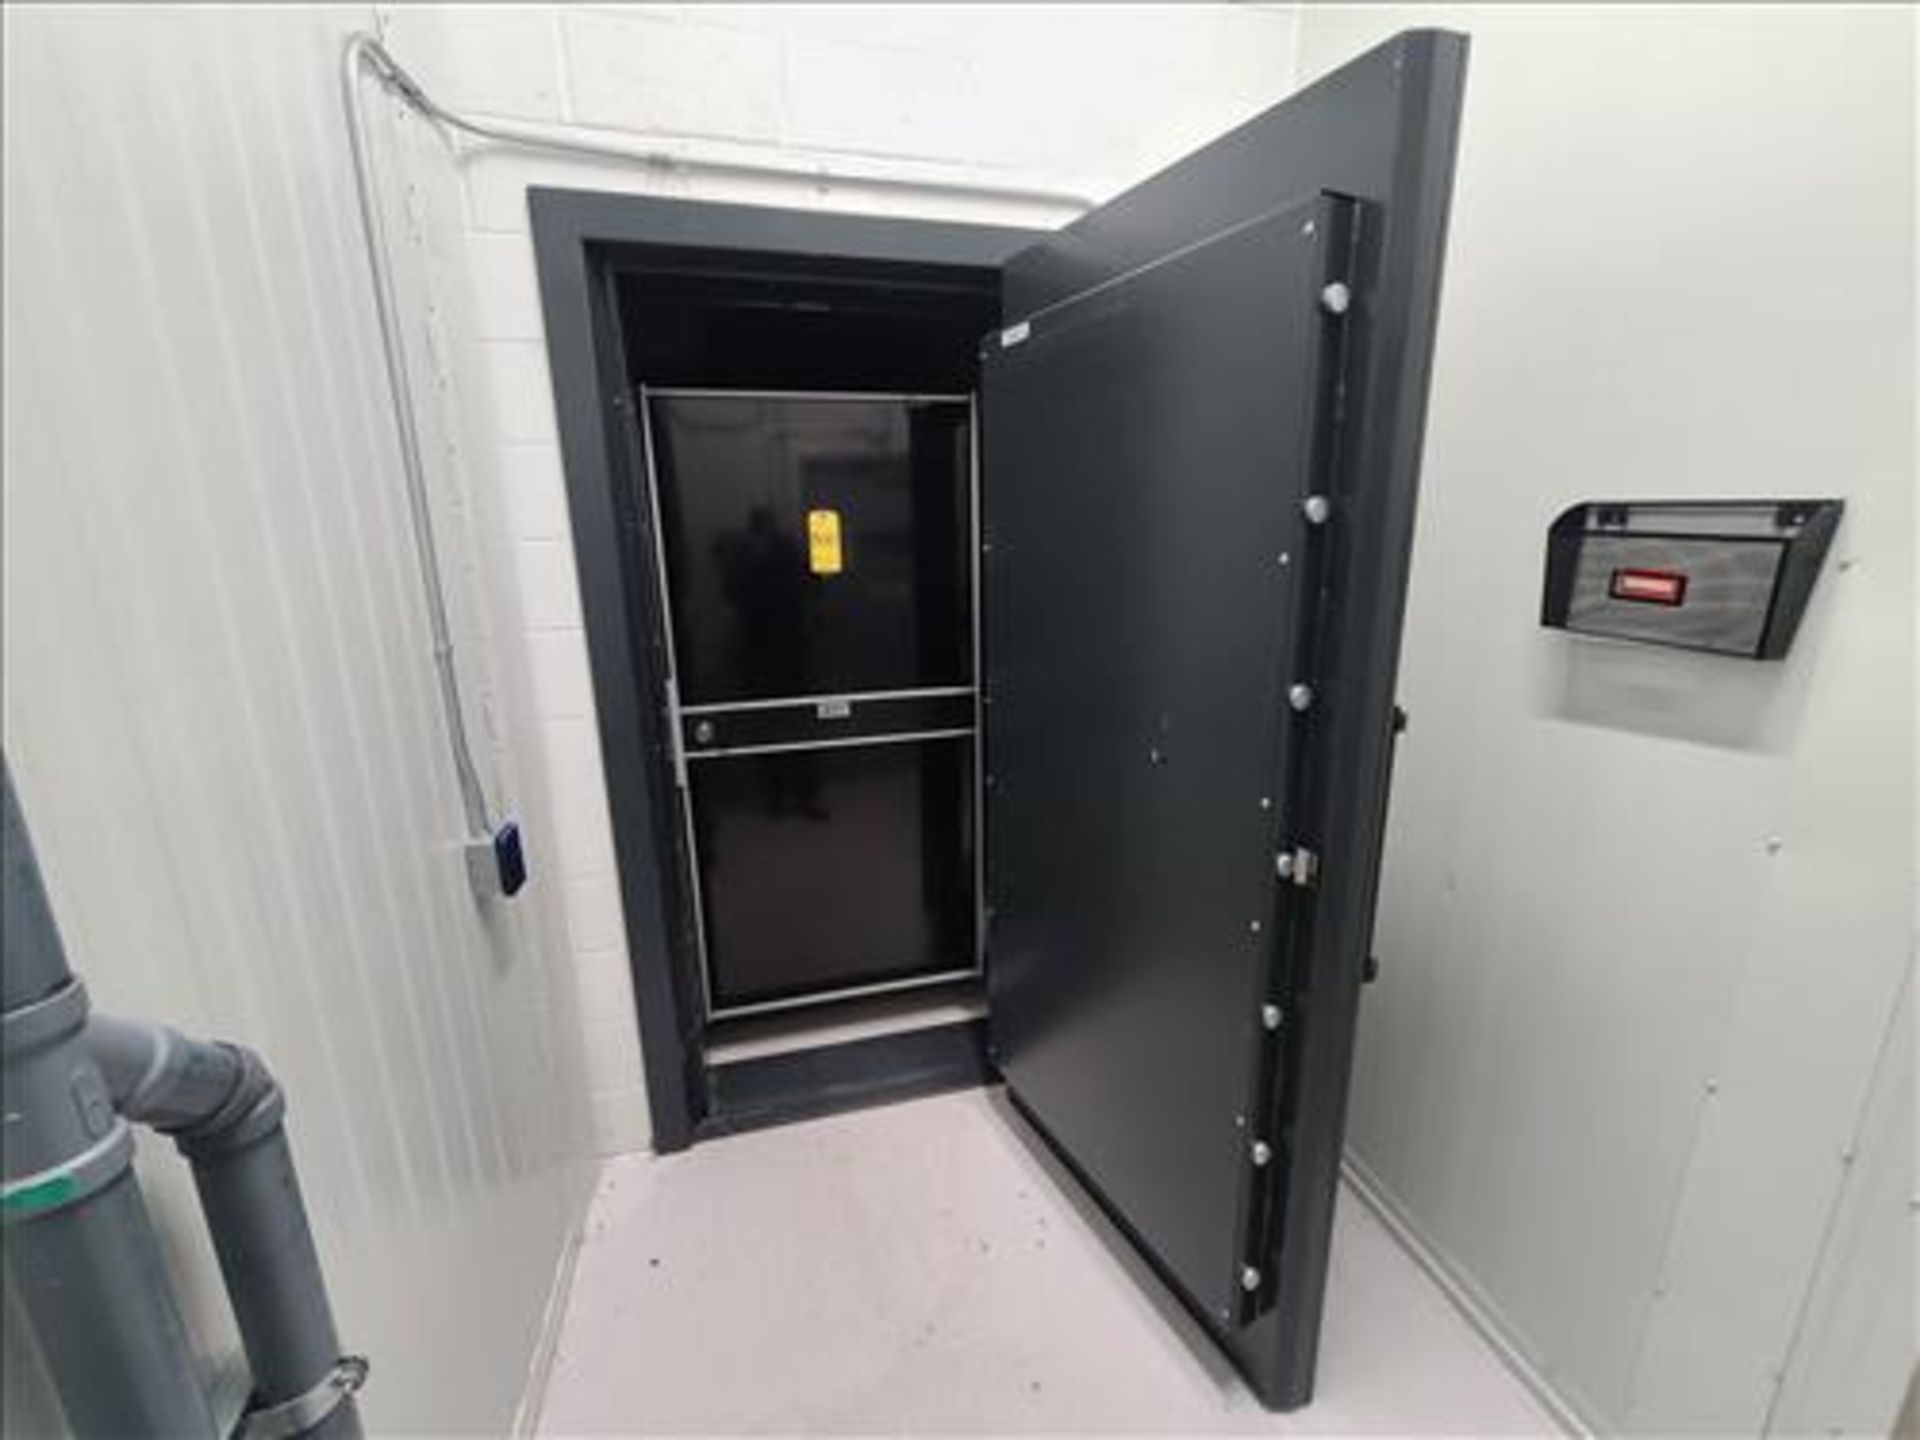 Adanac vault door, mod. WP13822, s/n MM70-20171003-11351 (combination unknown/subject to confirmati